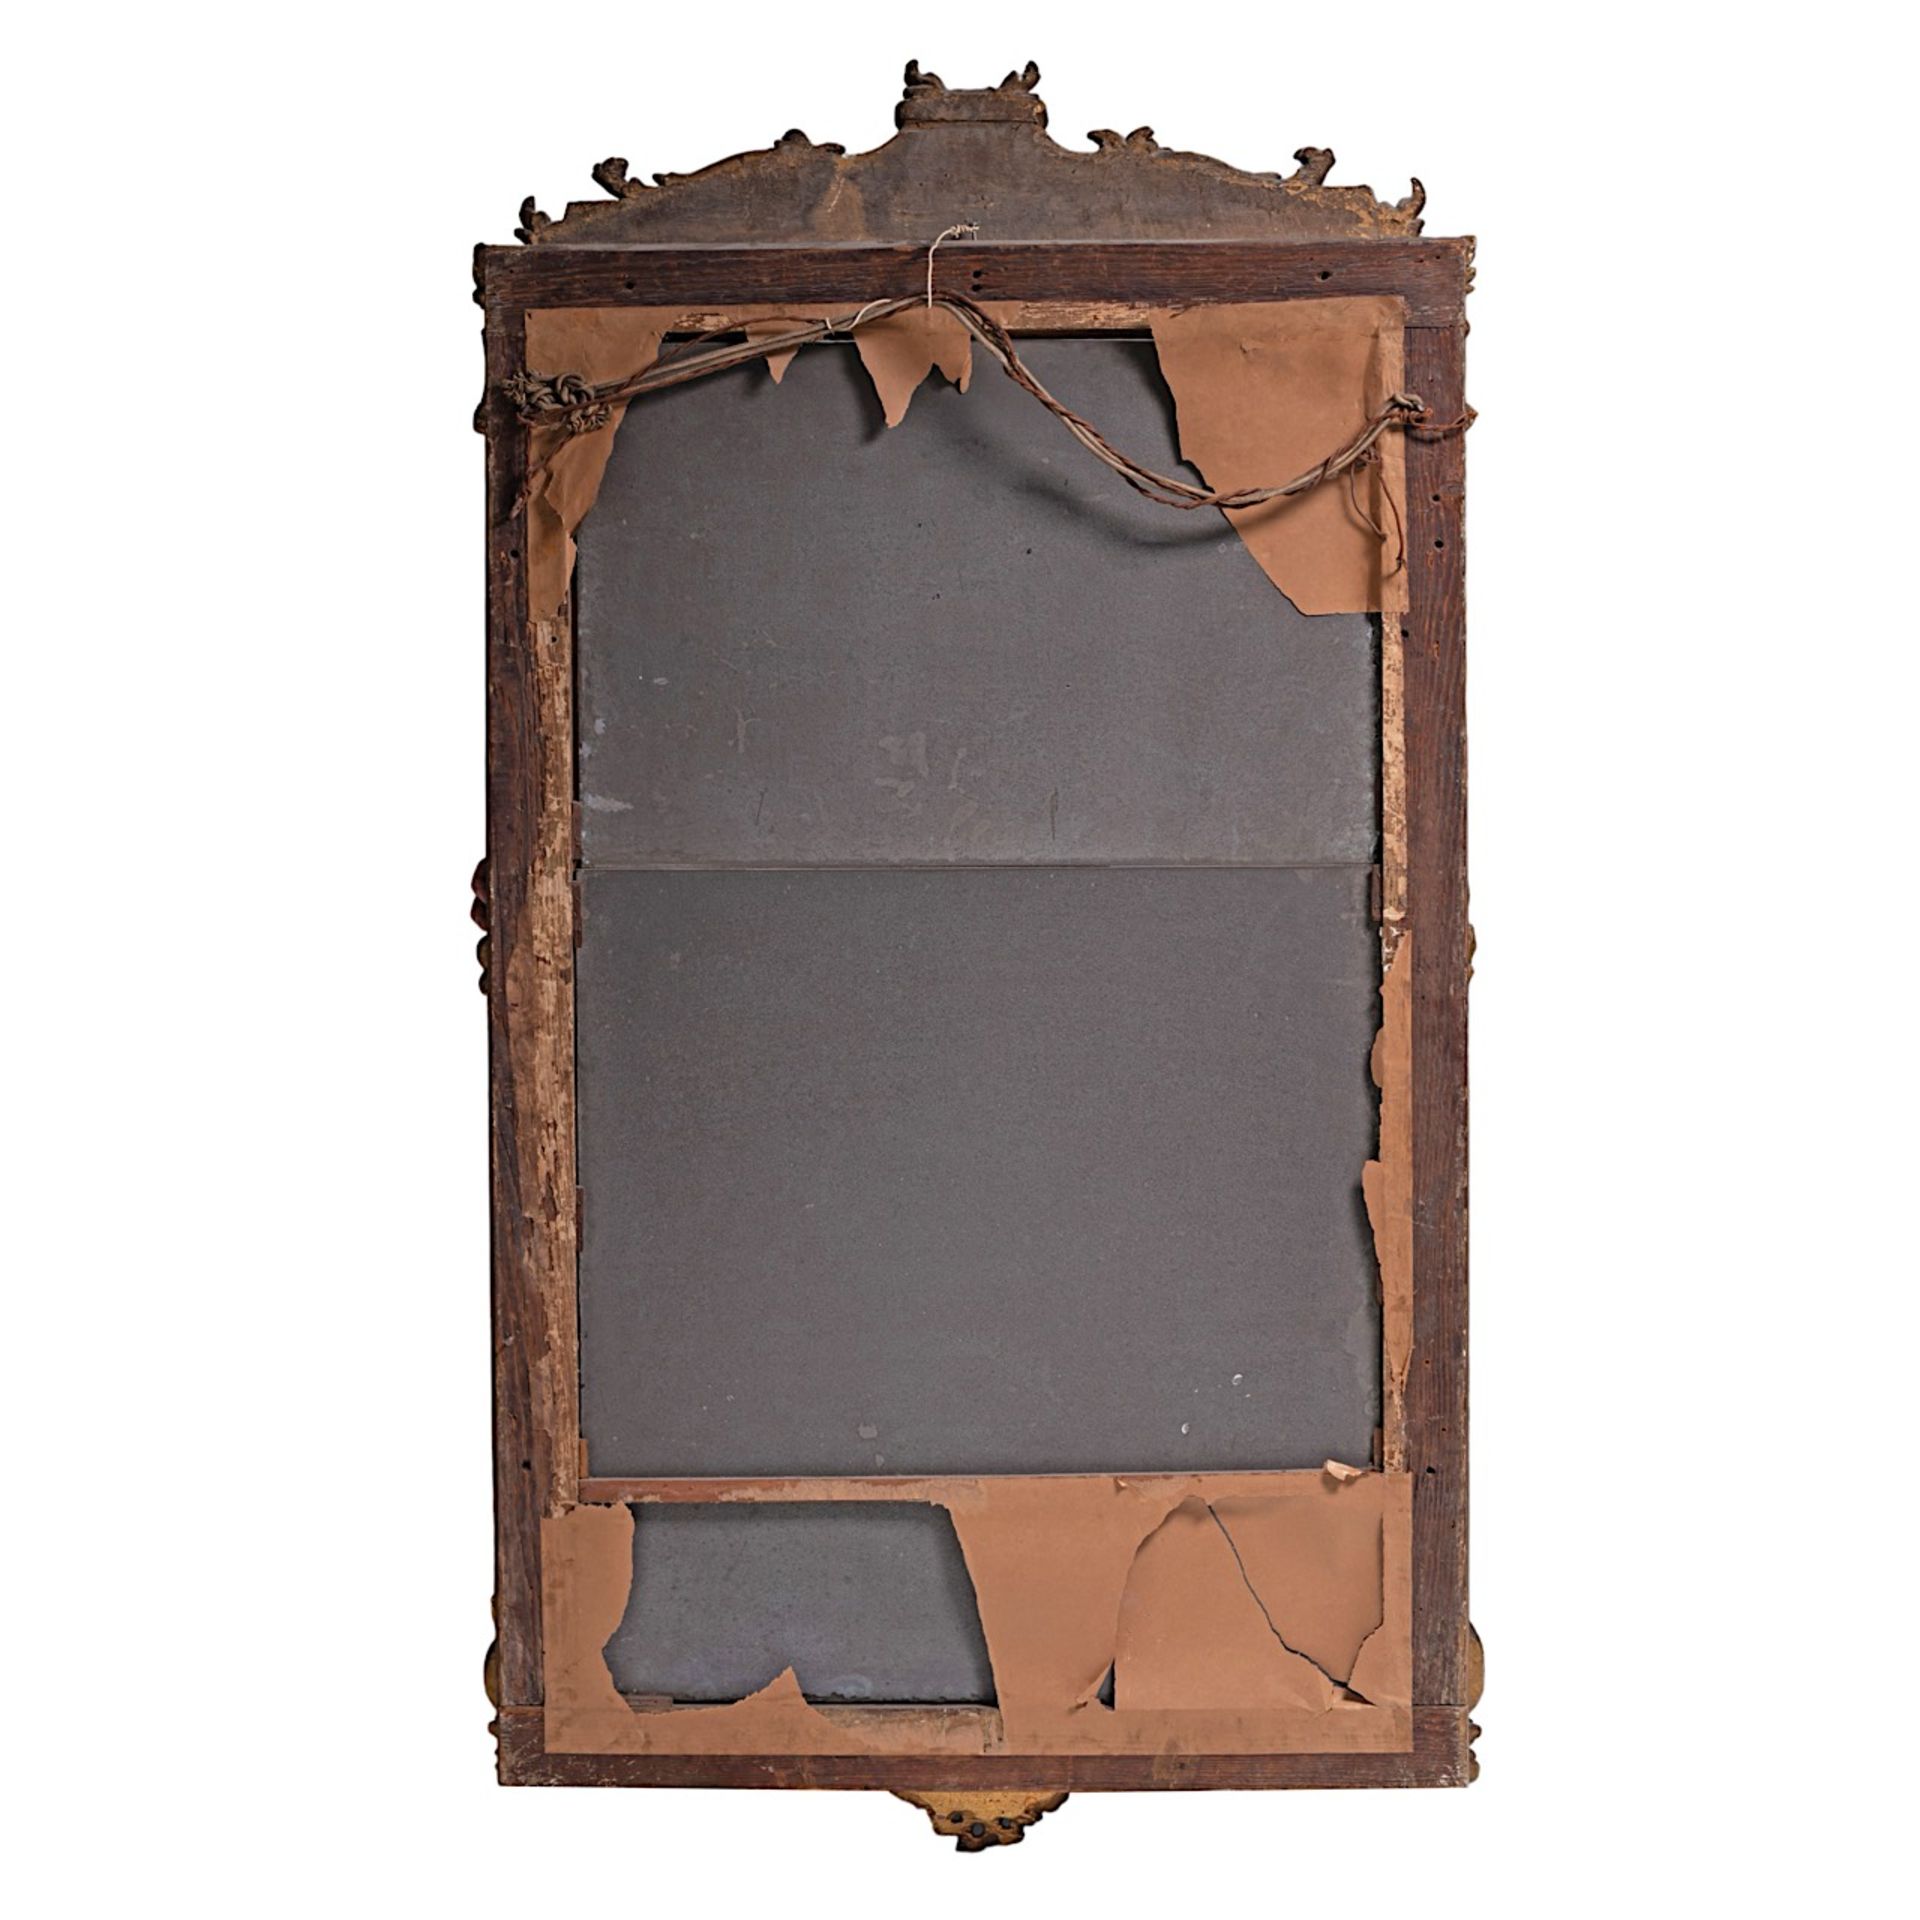 A Rococo giltwood trumeau mirror, mid 18thC 179 x 97 cm. (70.4 x 38.1 in.) - Bild 3 aus 3